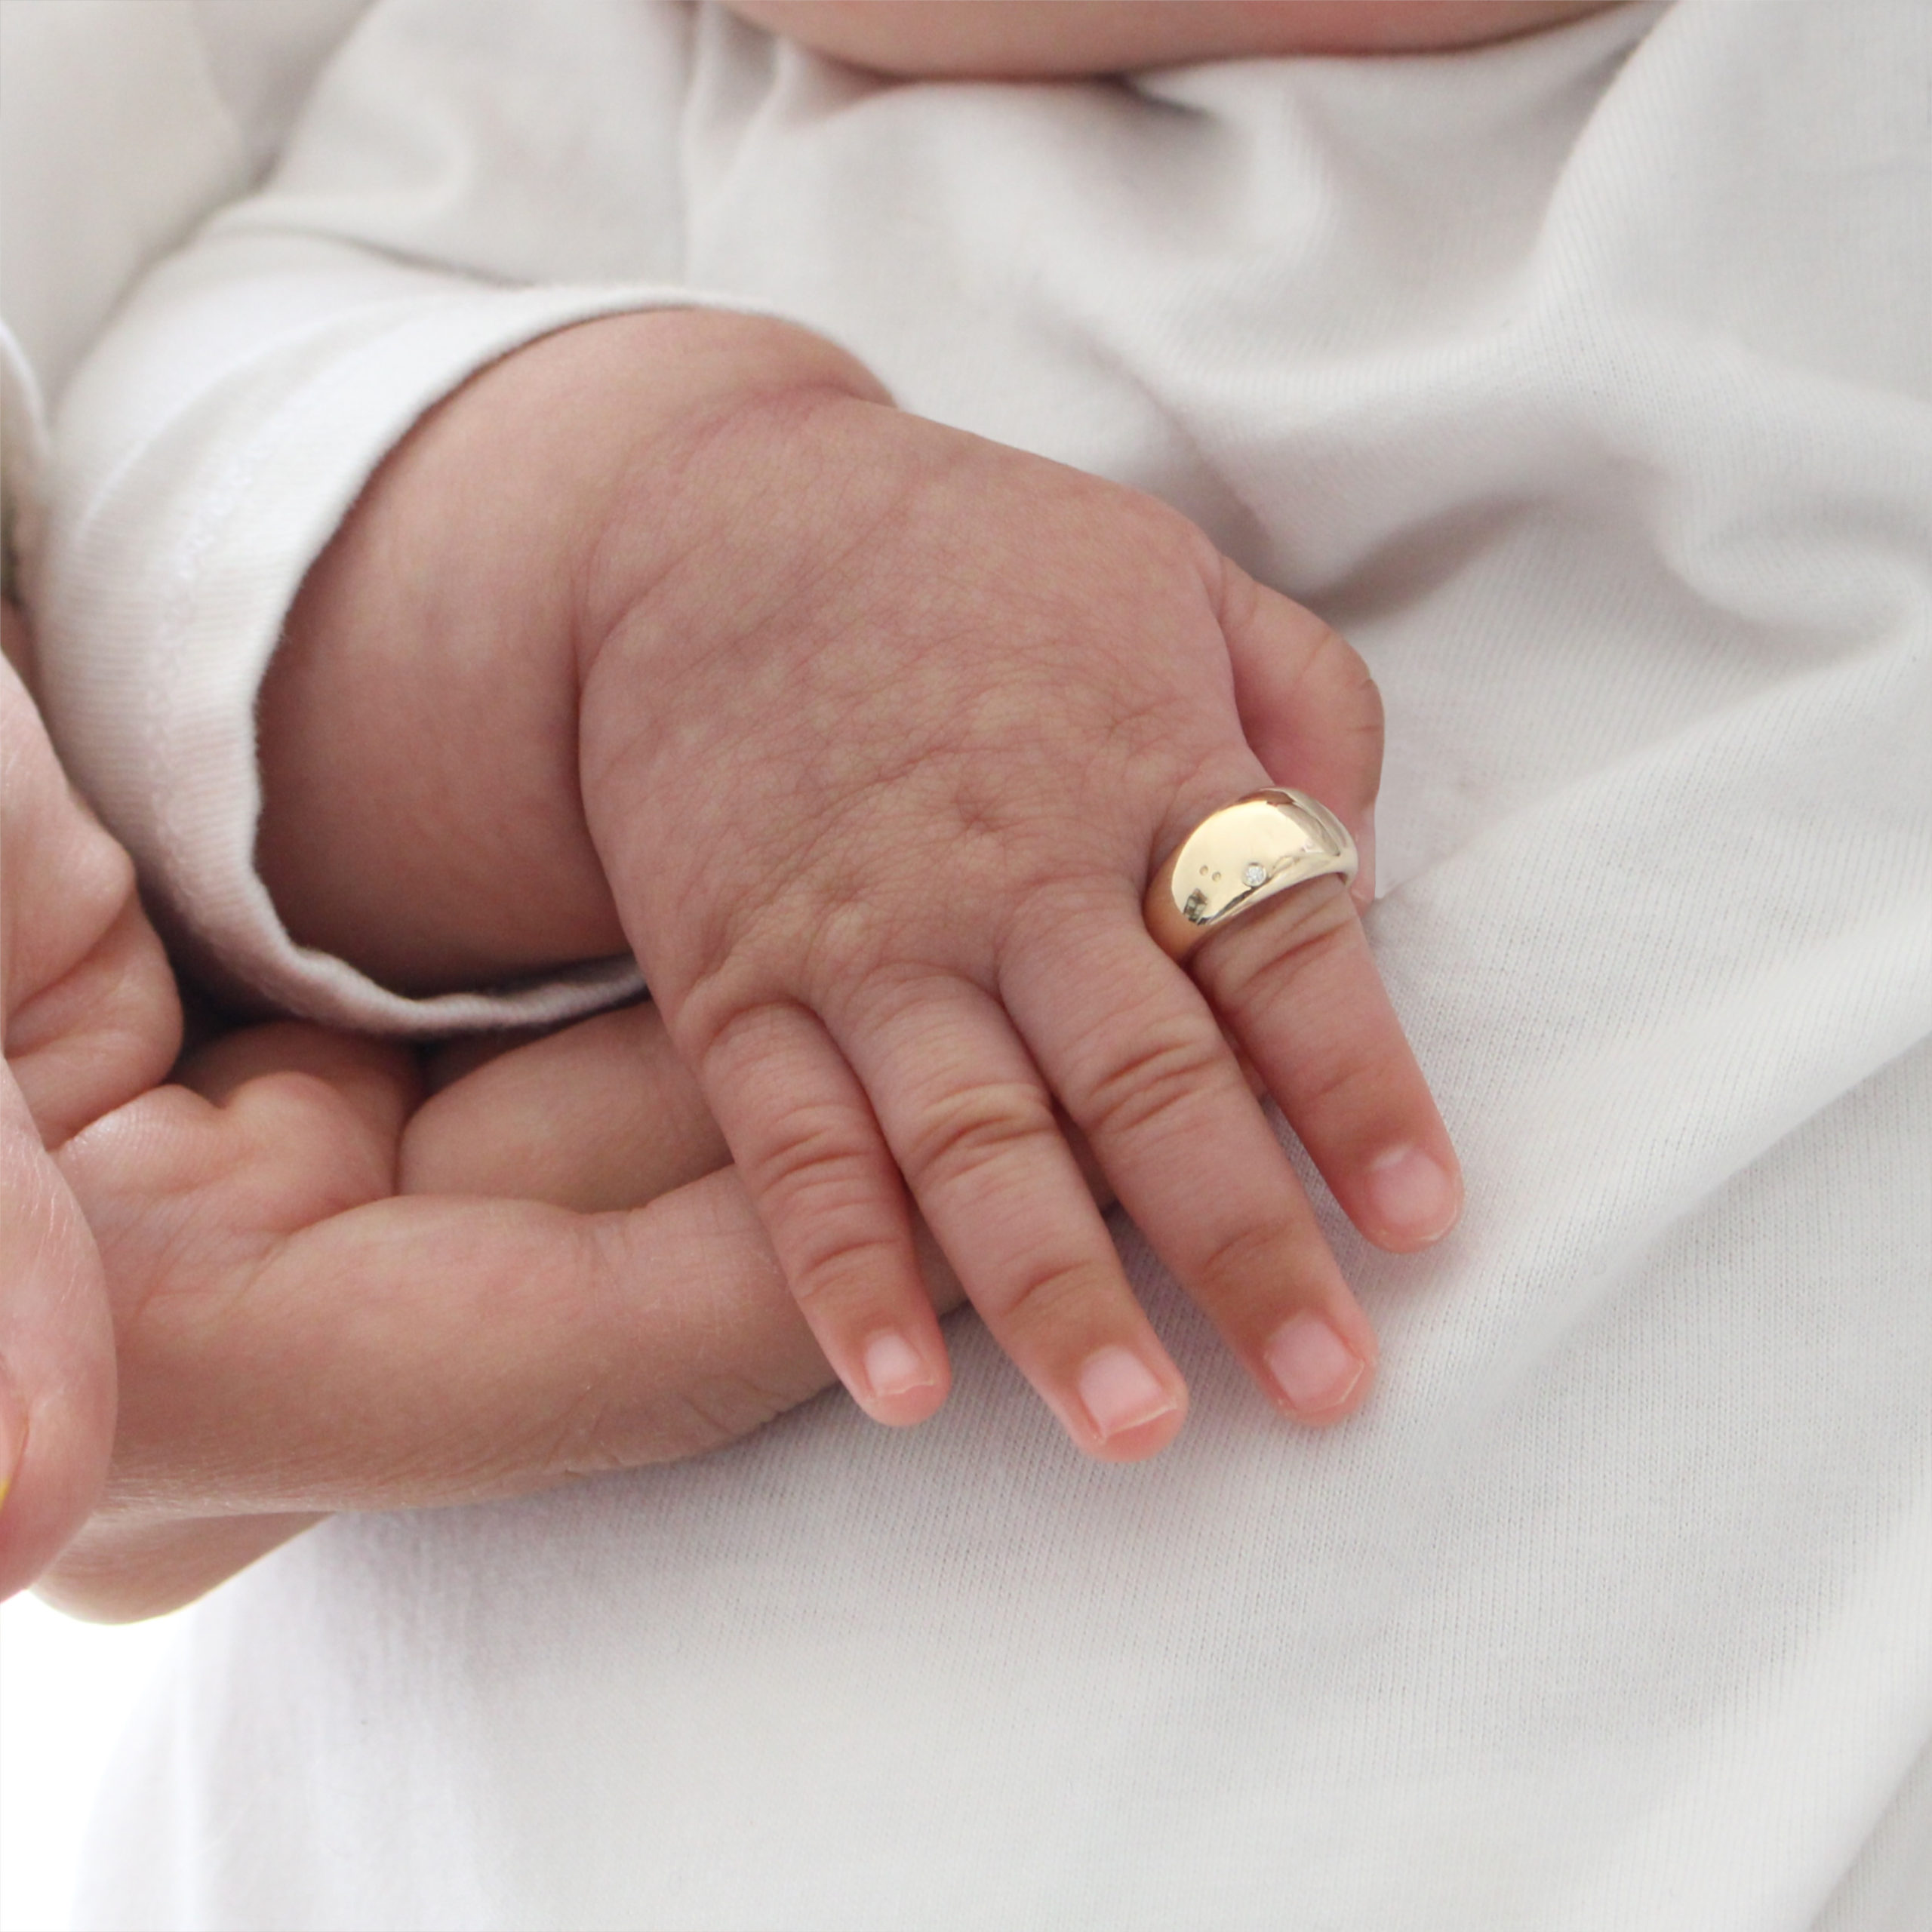 赤ちゃんの手とベビーリング